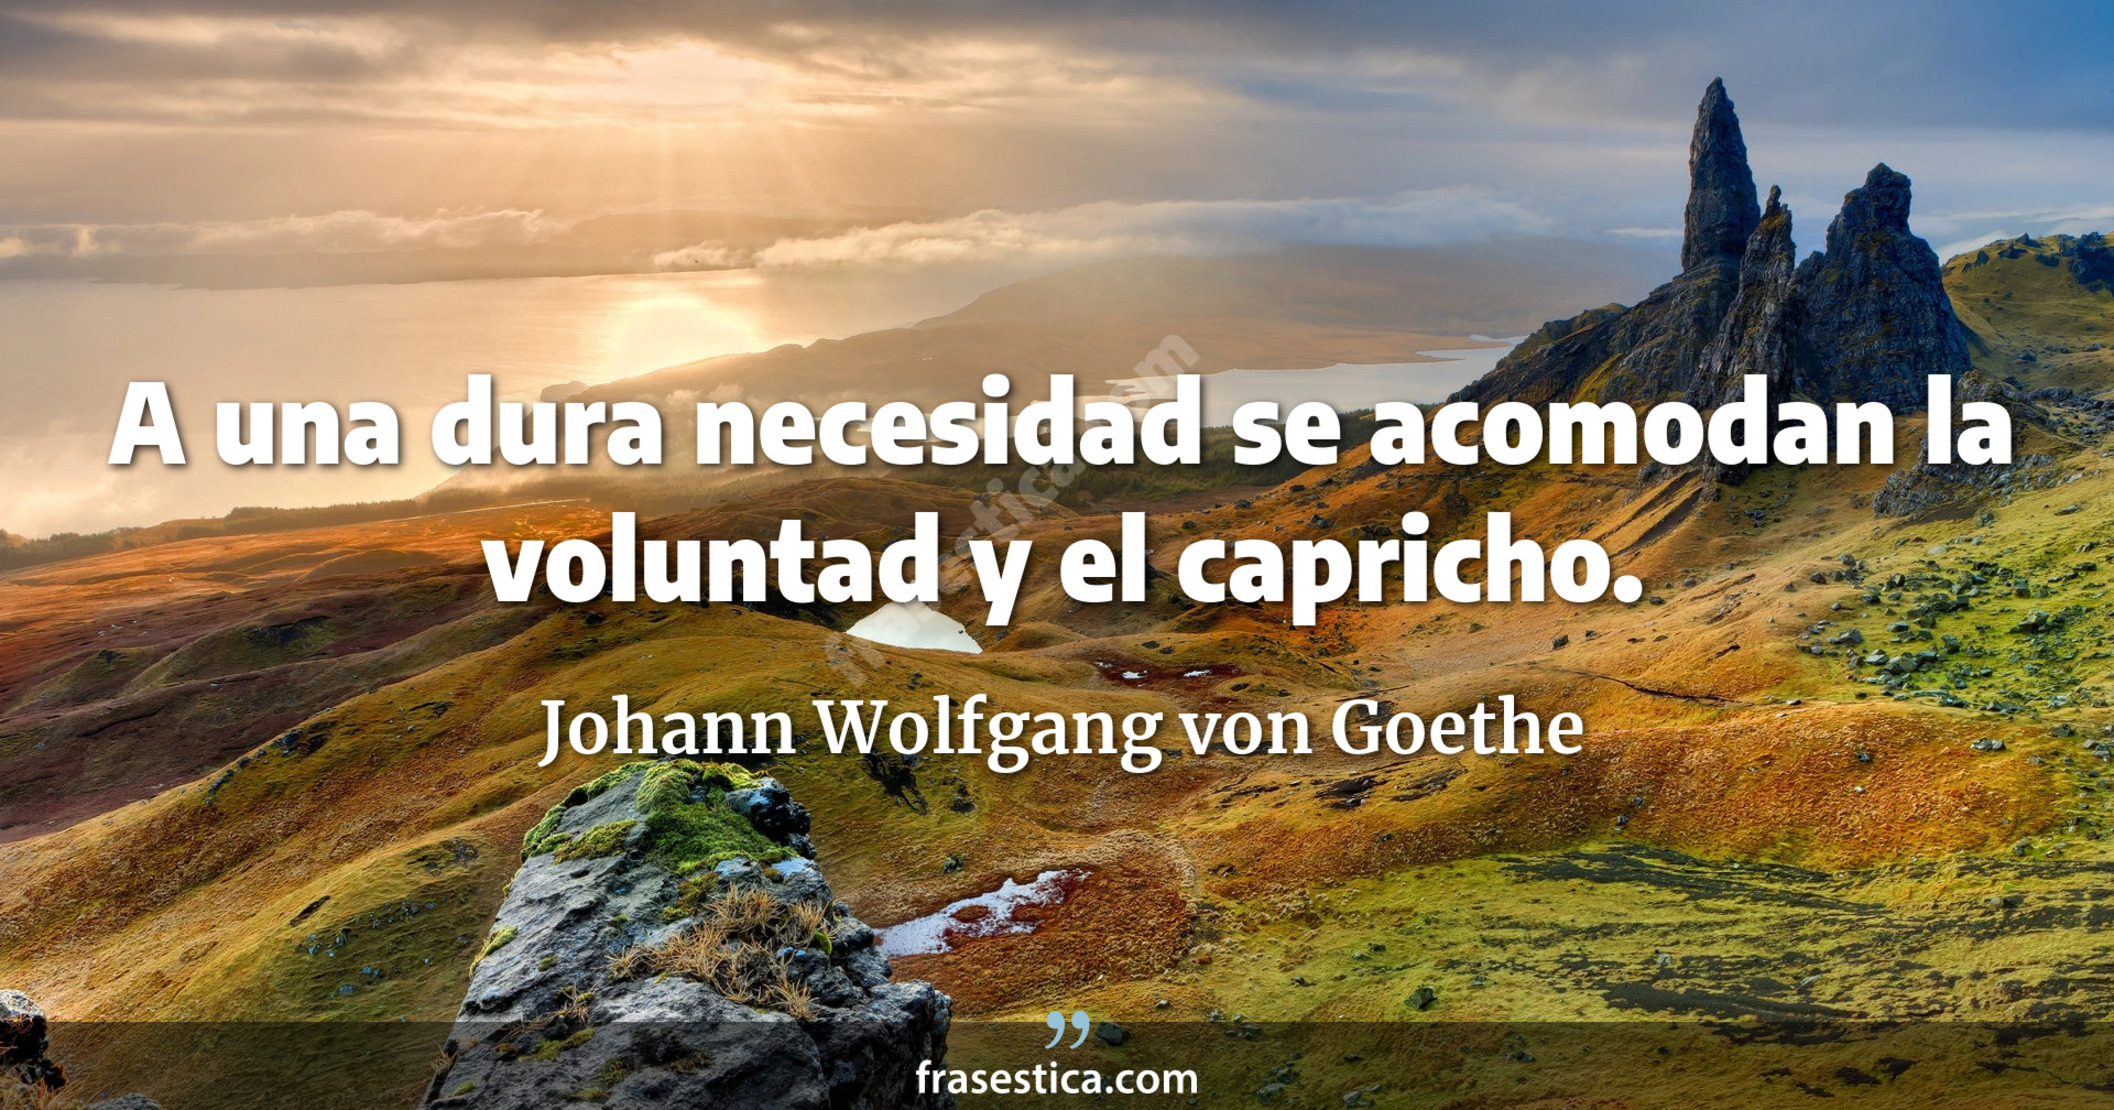 A una dura necesidad se acomodan la voluntad y el capricho. - Johann Wolfgang von Goethe